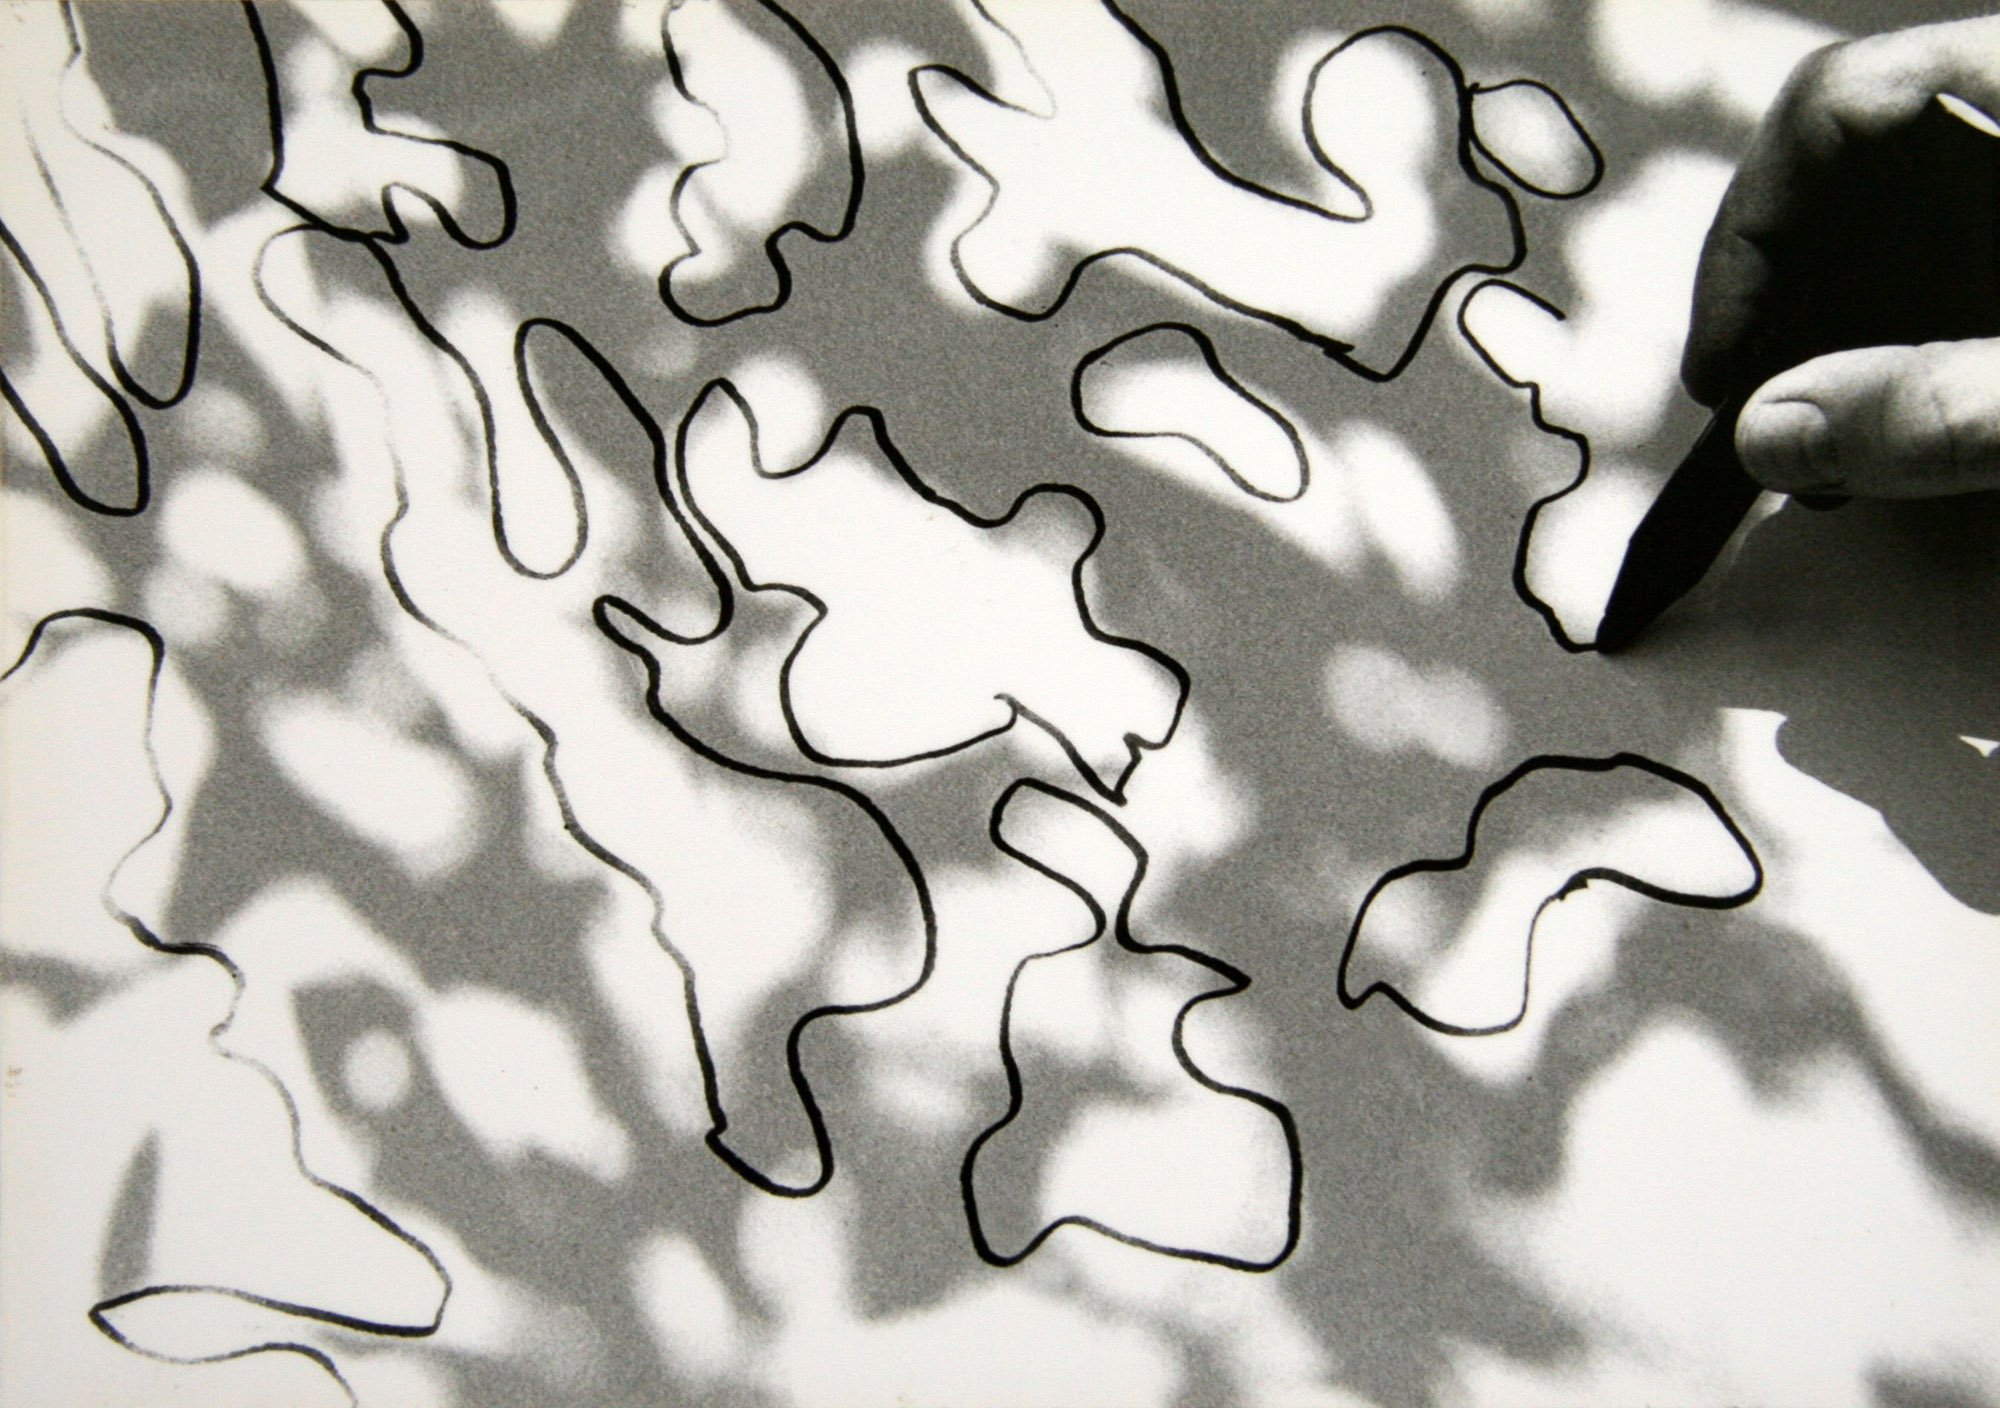 Zygmunt Rytka, Obiekty chwilowe | Momentary Objects, 1989-2003, print comp., fotografia na piance kapa fix, druk EPSON STYLUS PHOTO 900, (1-2) każdy 21×30 cm, źródło: Galeria Labirynt